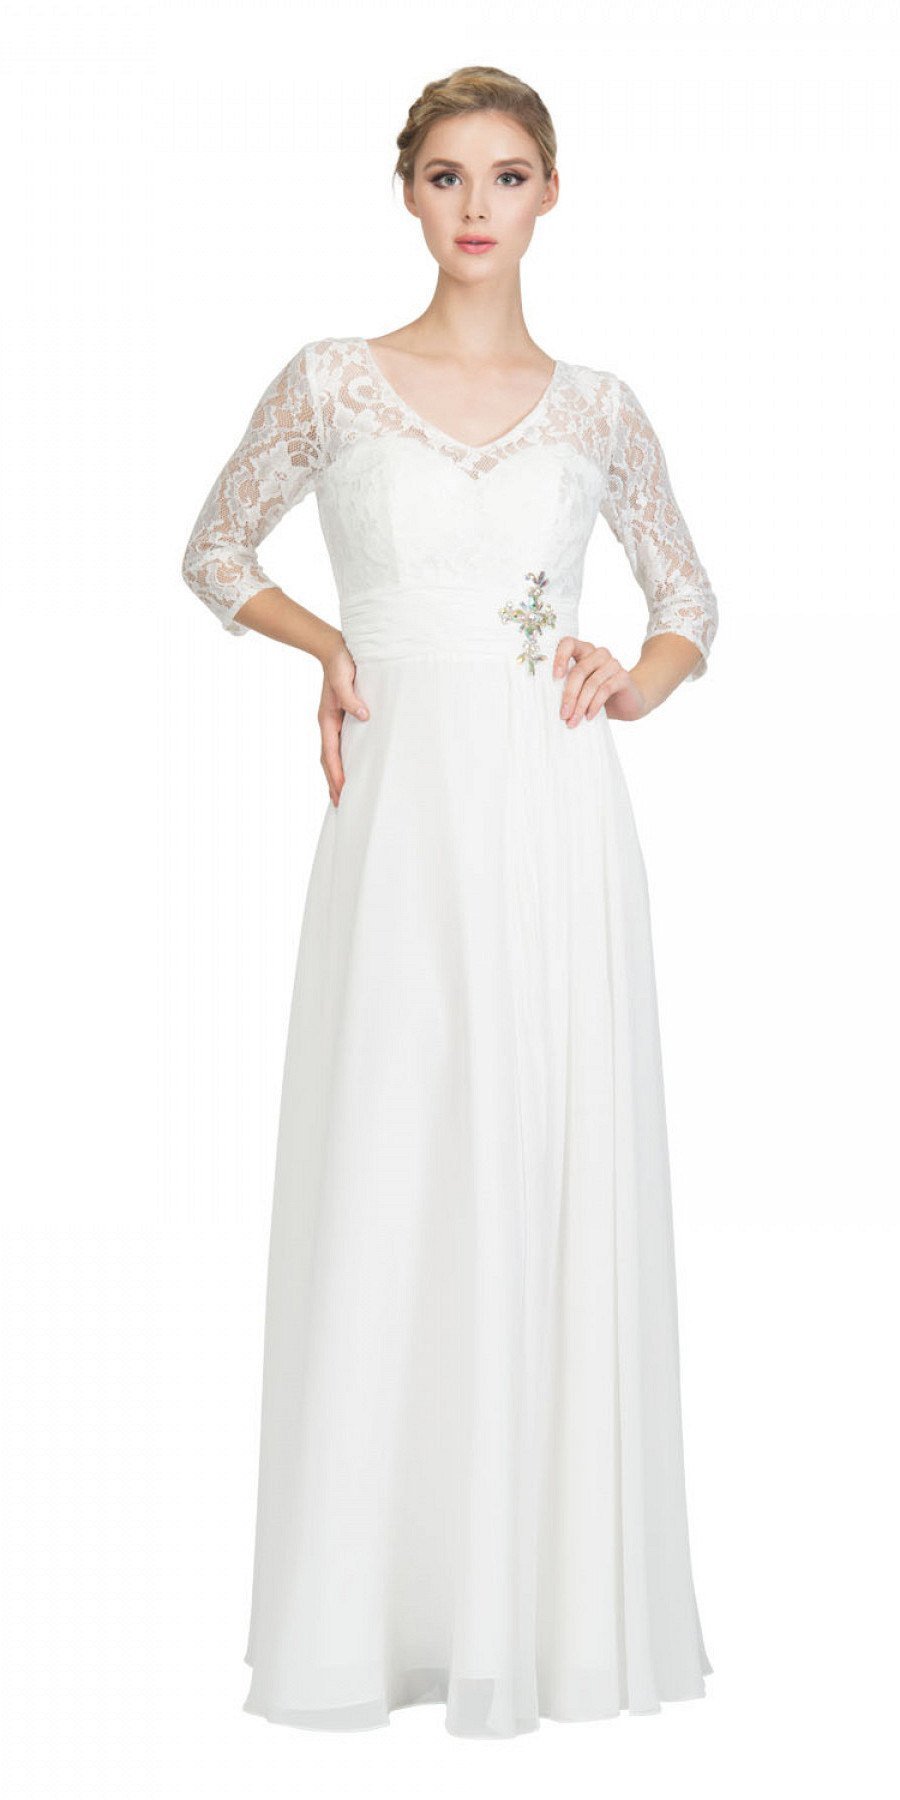 white mid length dresses